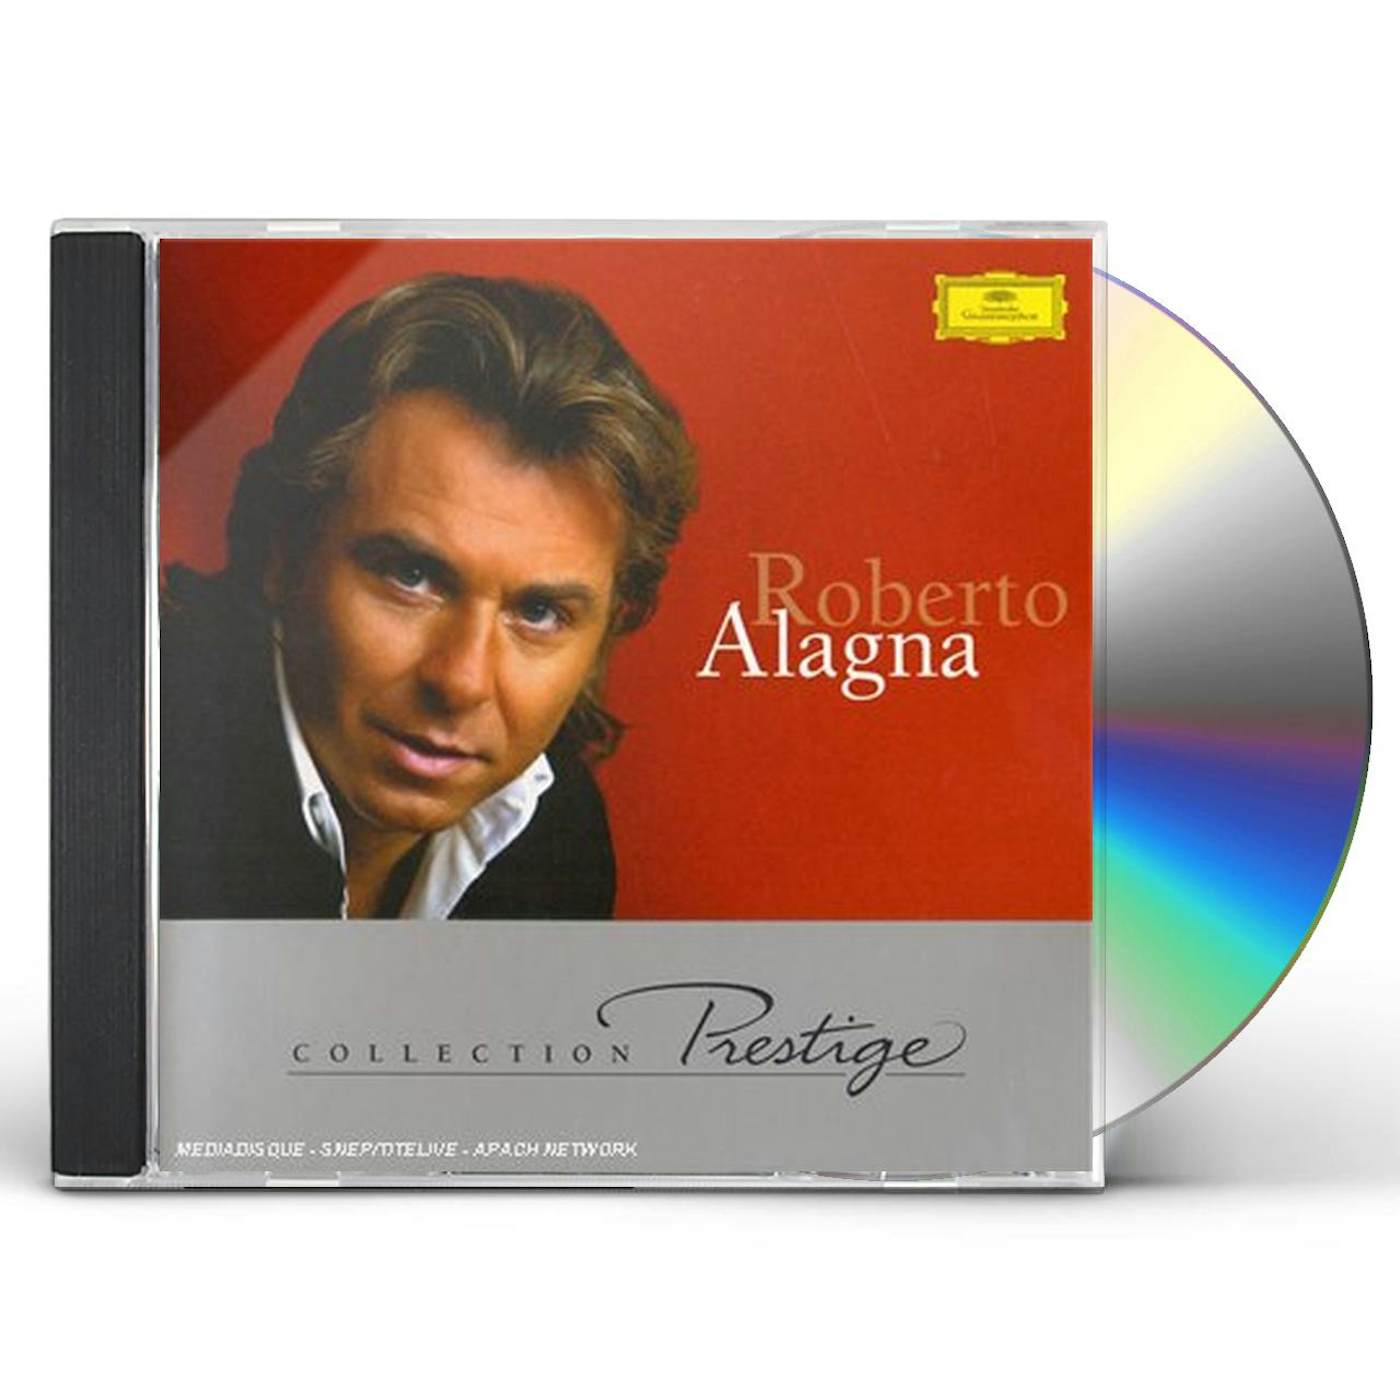 Roberto Alagna COLLECTION PRESTIGE CD